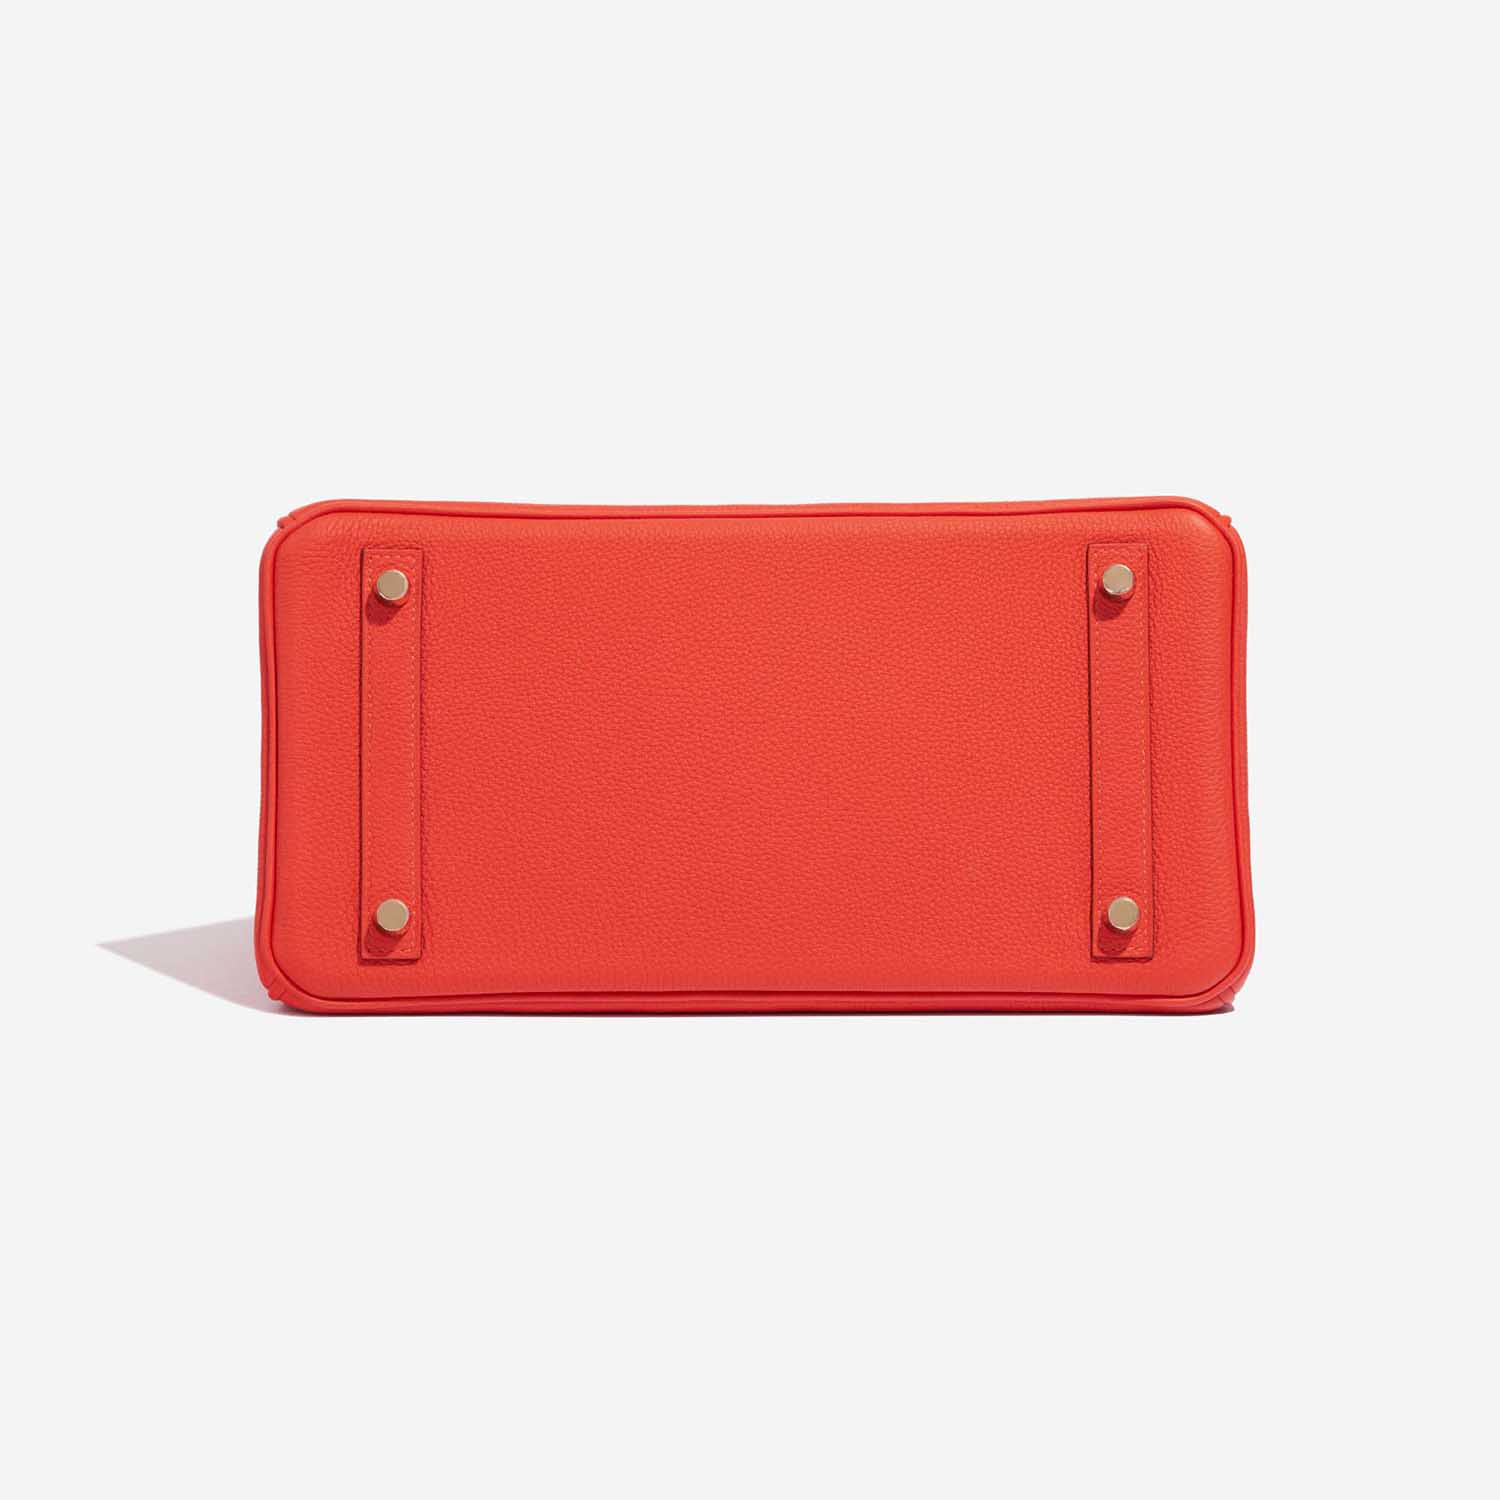 Hermes Capucine Red-Orange 30cm Togo Birkin Bag Gold Hardware at 1stDibs